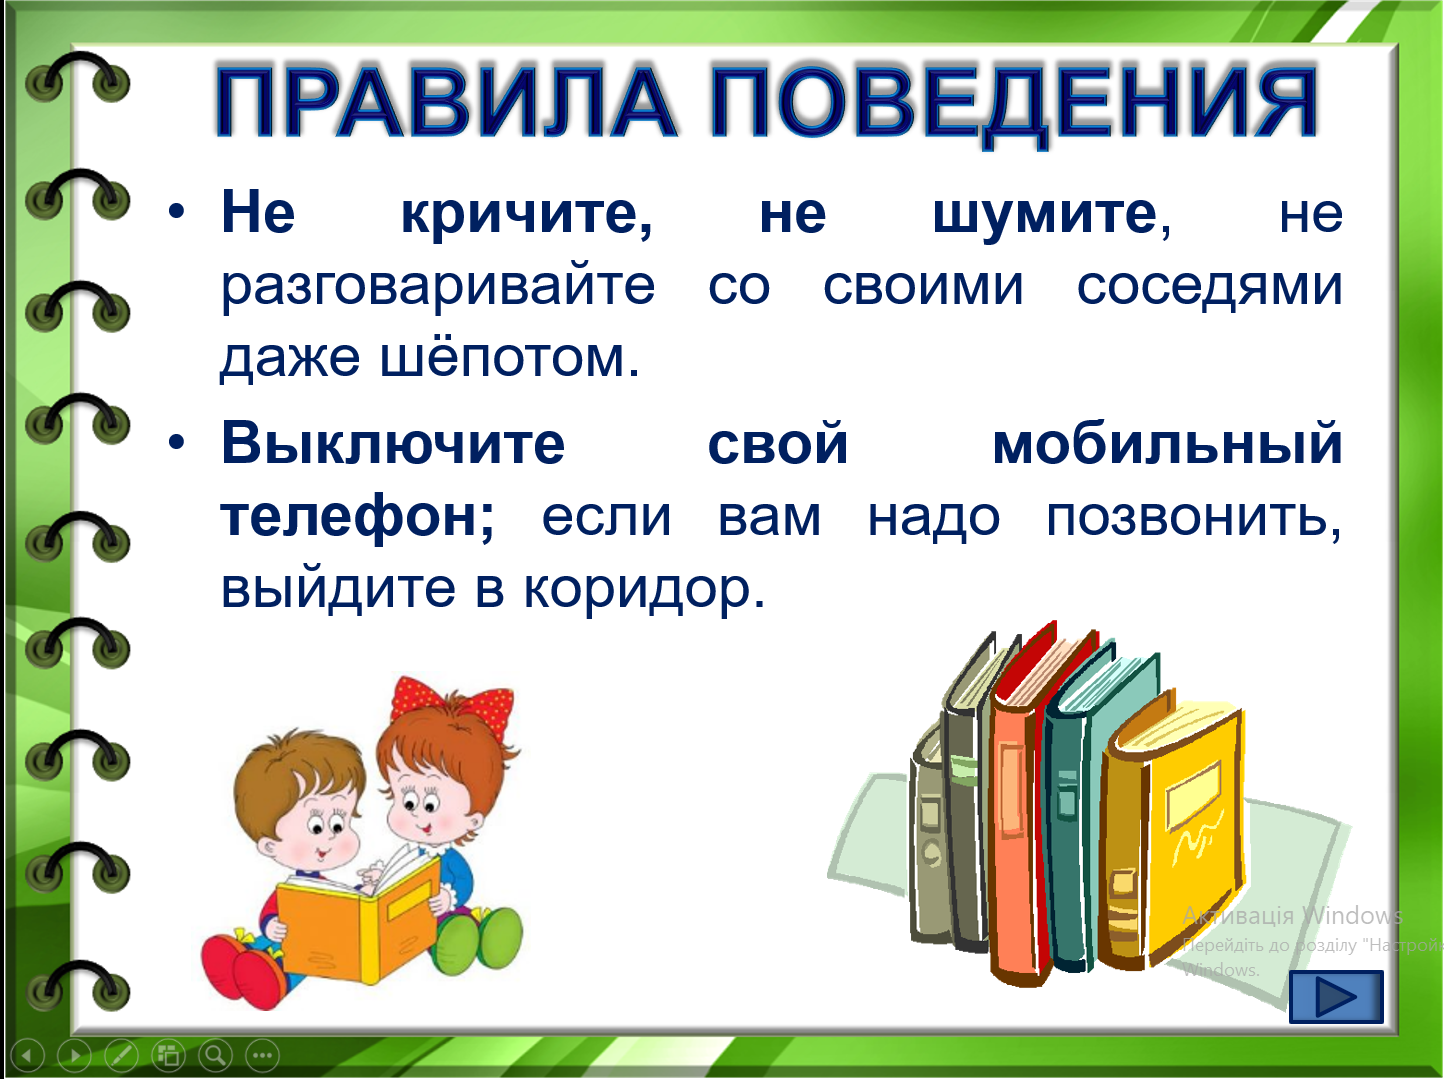 Этикет библиотека. Правила поведения. Правила поведения в библиотеке. Правила в библиотеке для детей. Правило поведения в библиотеке.